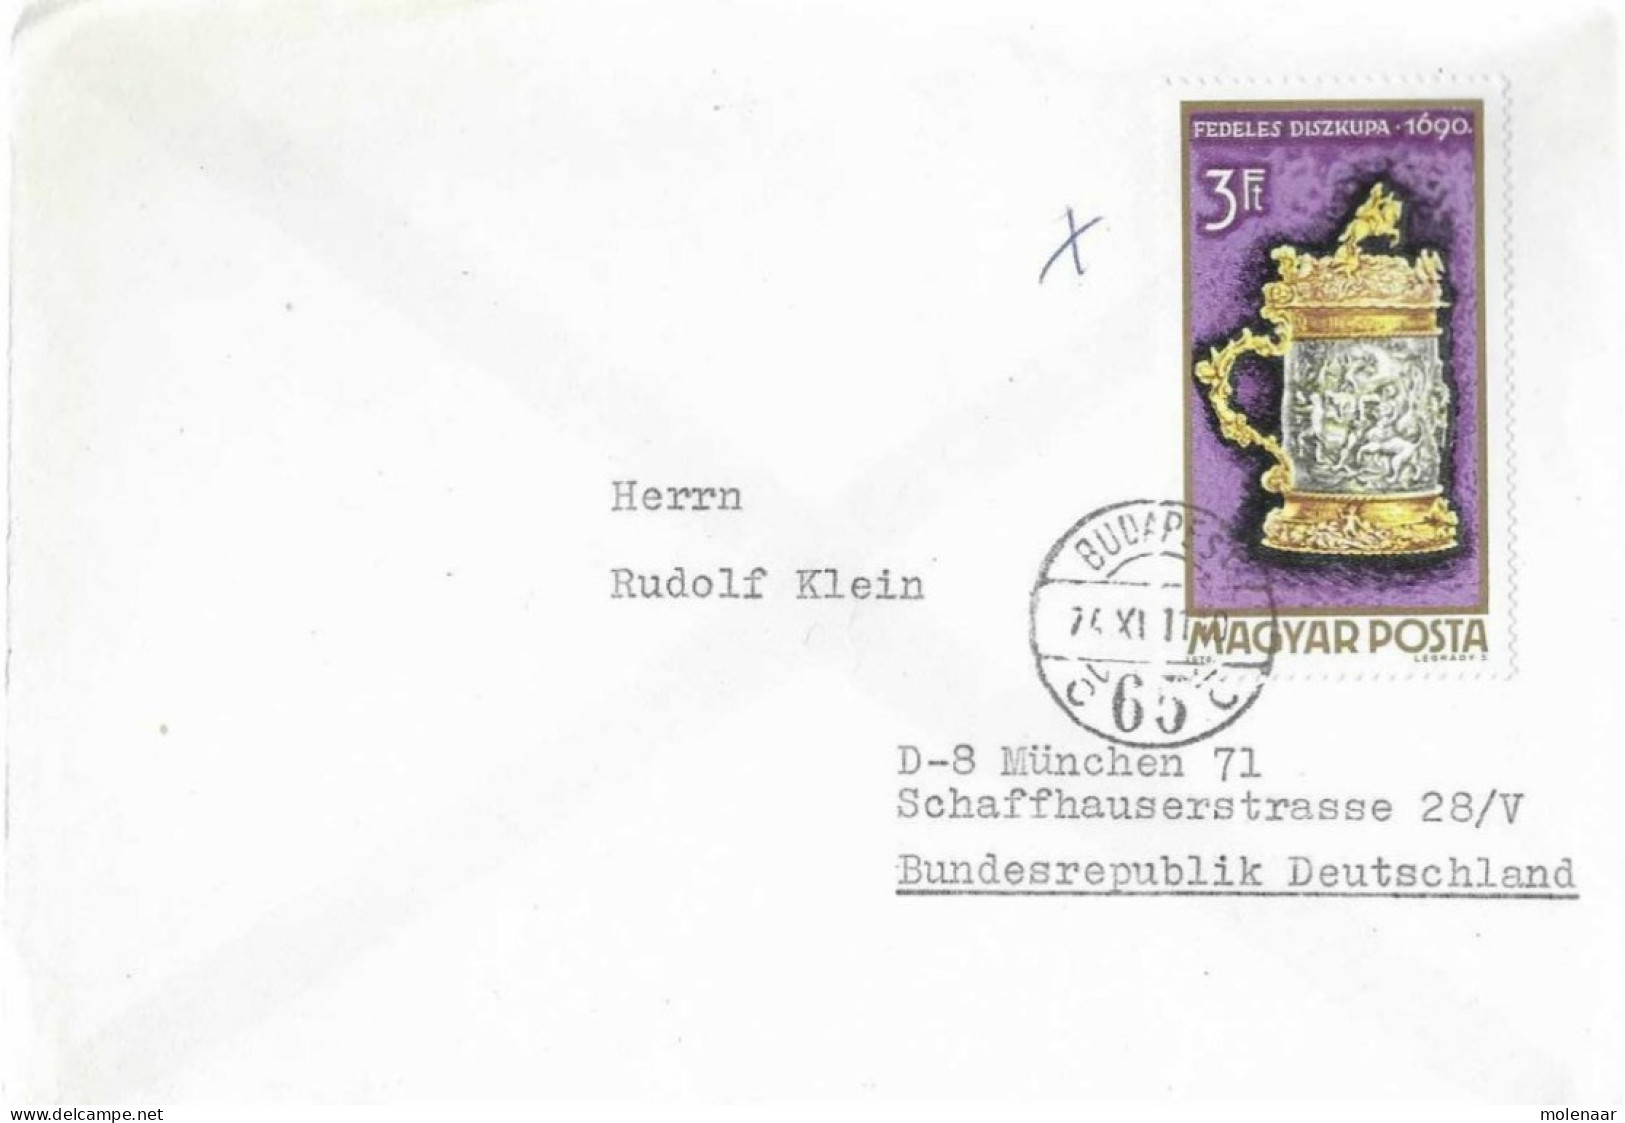 Postzegels > Europa > Hongarije > 1971-80 >brief Met 1 Postzegel (17062) - Briefe U. Dokumente